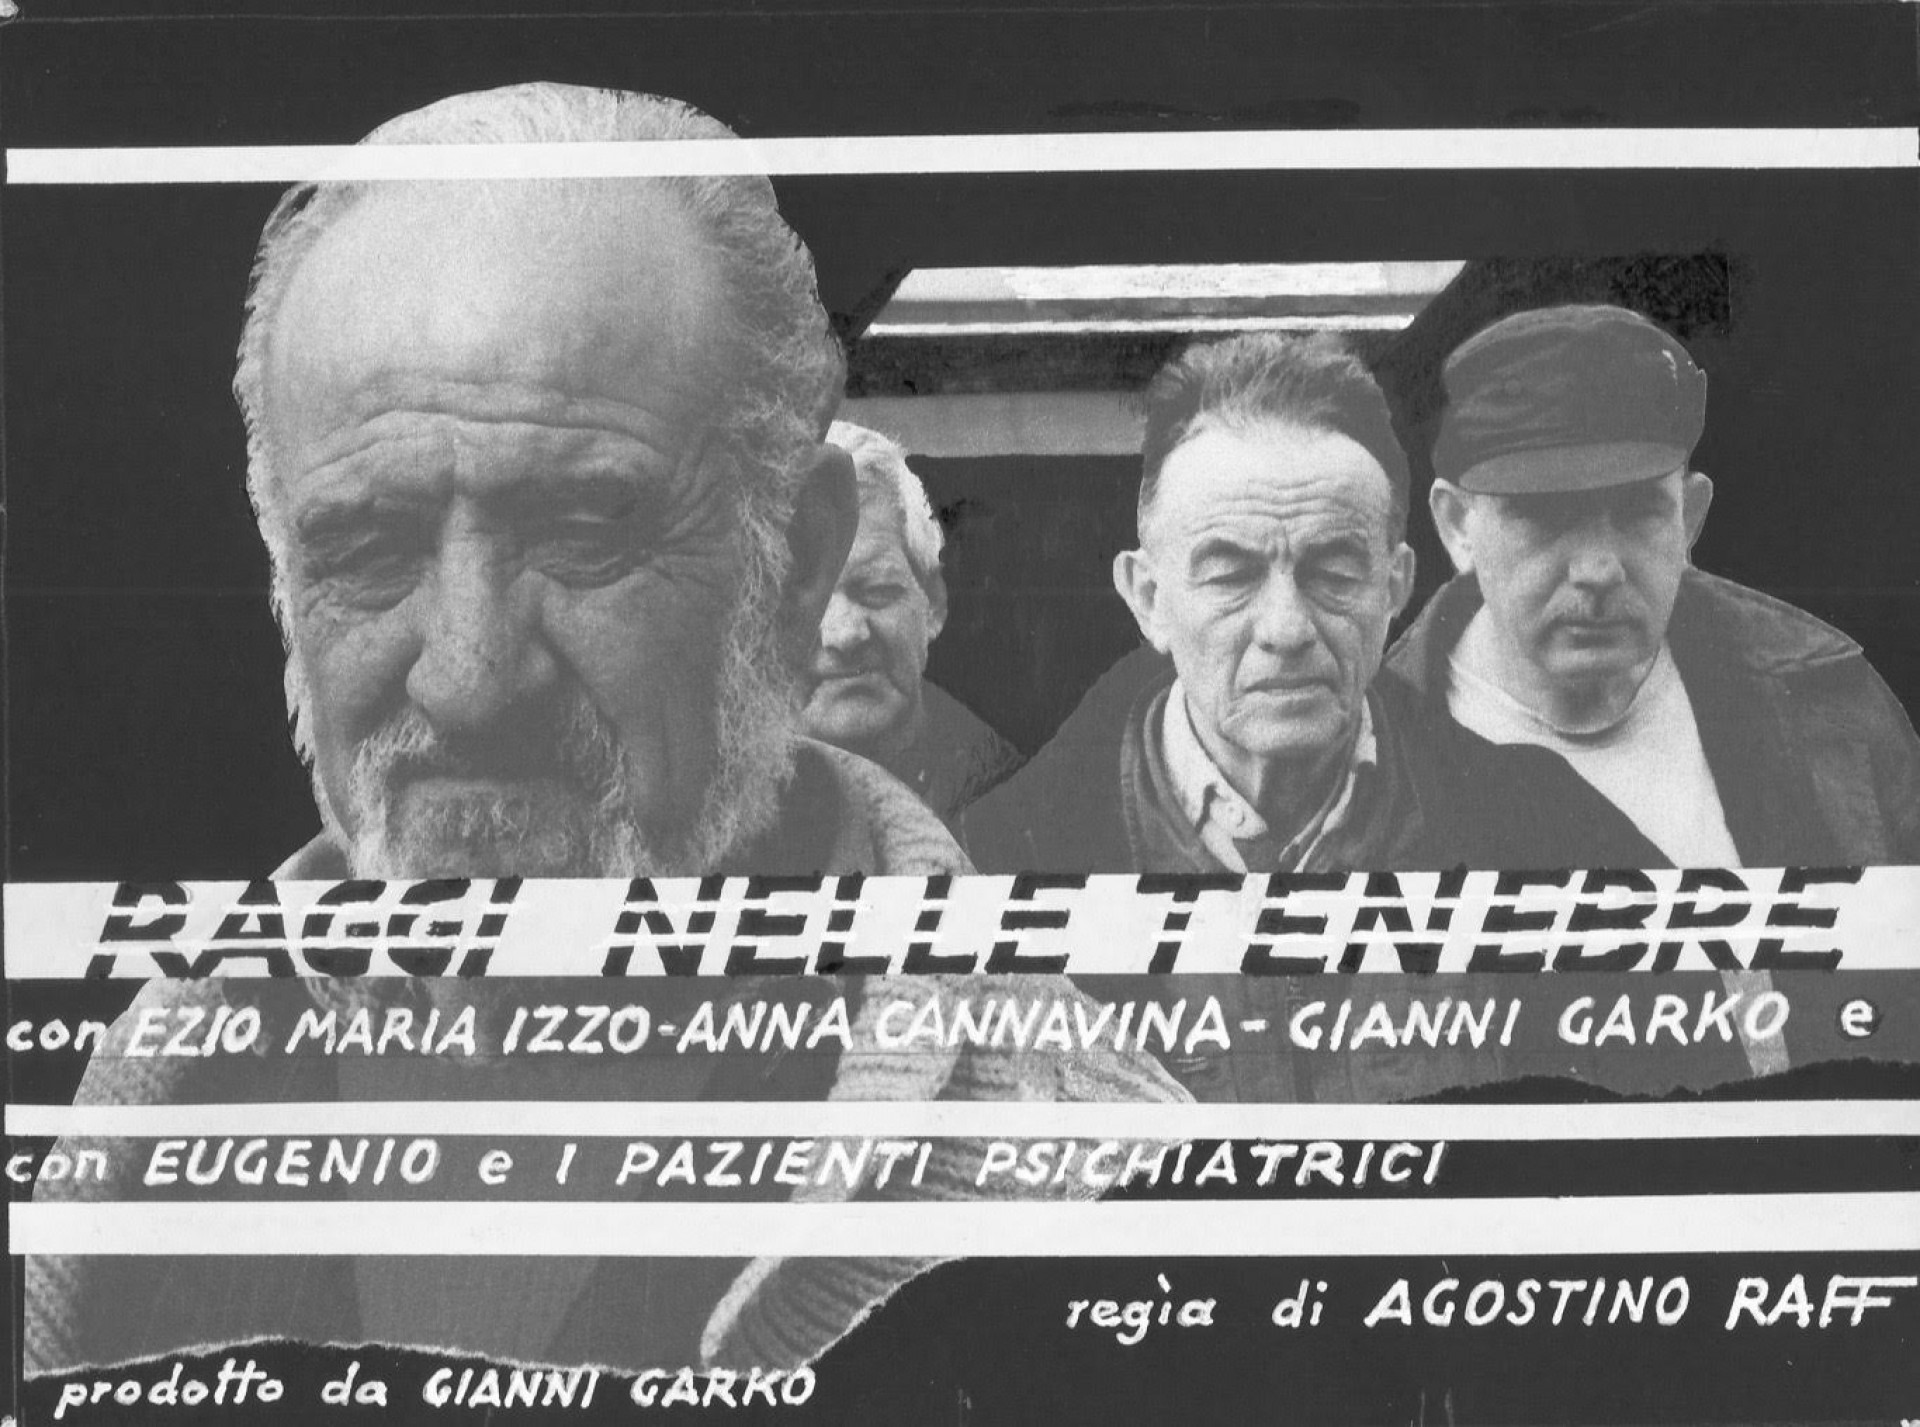 Raggi nelle tenebre - seconda tappa - ovvero come distruggere una psichiatria riabilitativa.  Docu-film in B/N, regia Agostino Raff, produzione Gianni Garko.